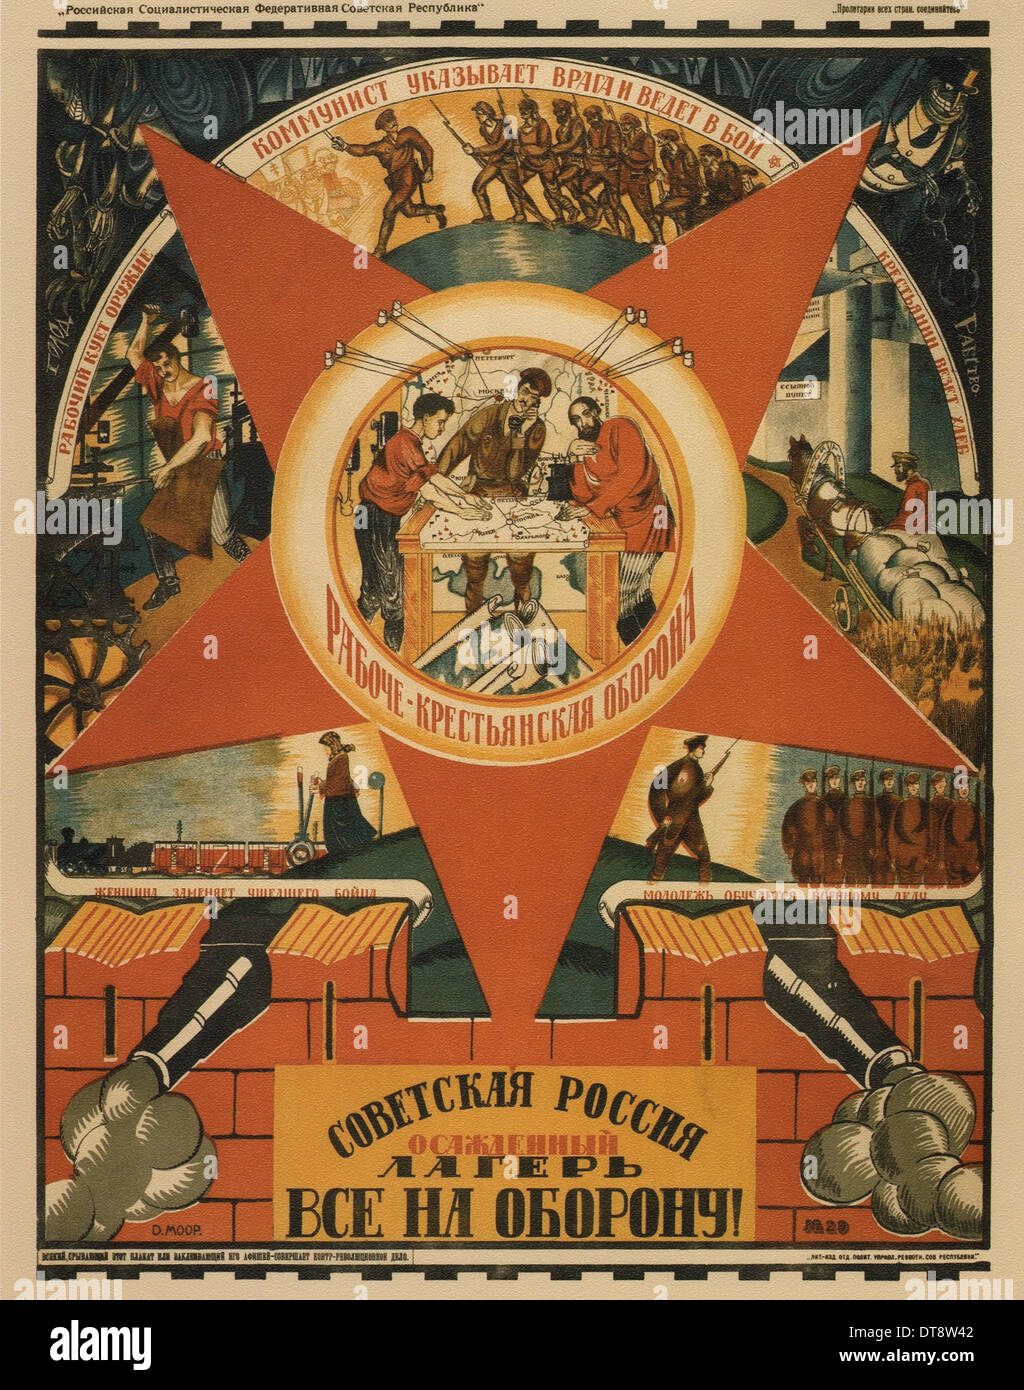 Sowjetrussland wird belagert. Alle zur Verteidigung! (Poster), 1919. Künstler: Moor, Dmitri Stachievich (1883-1946) Stockfoto